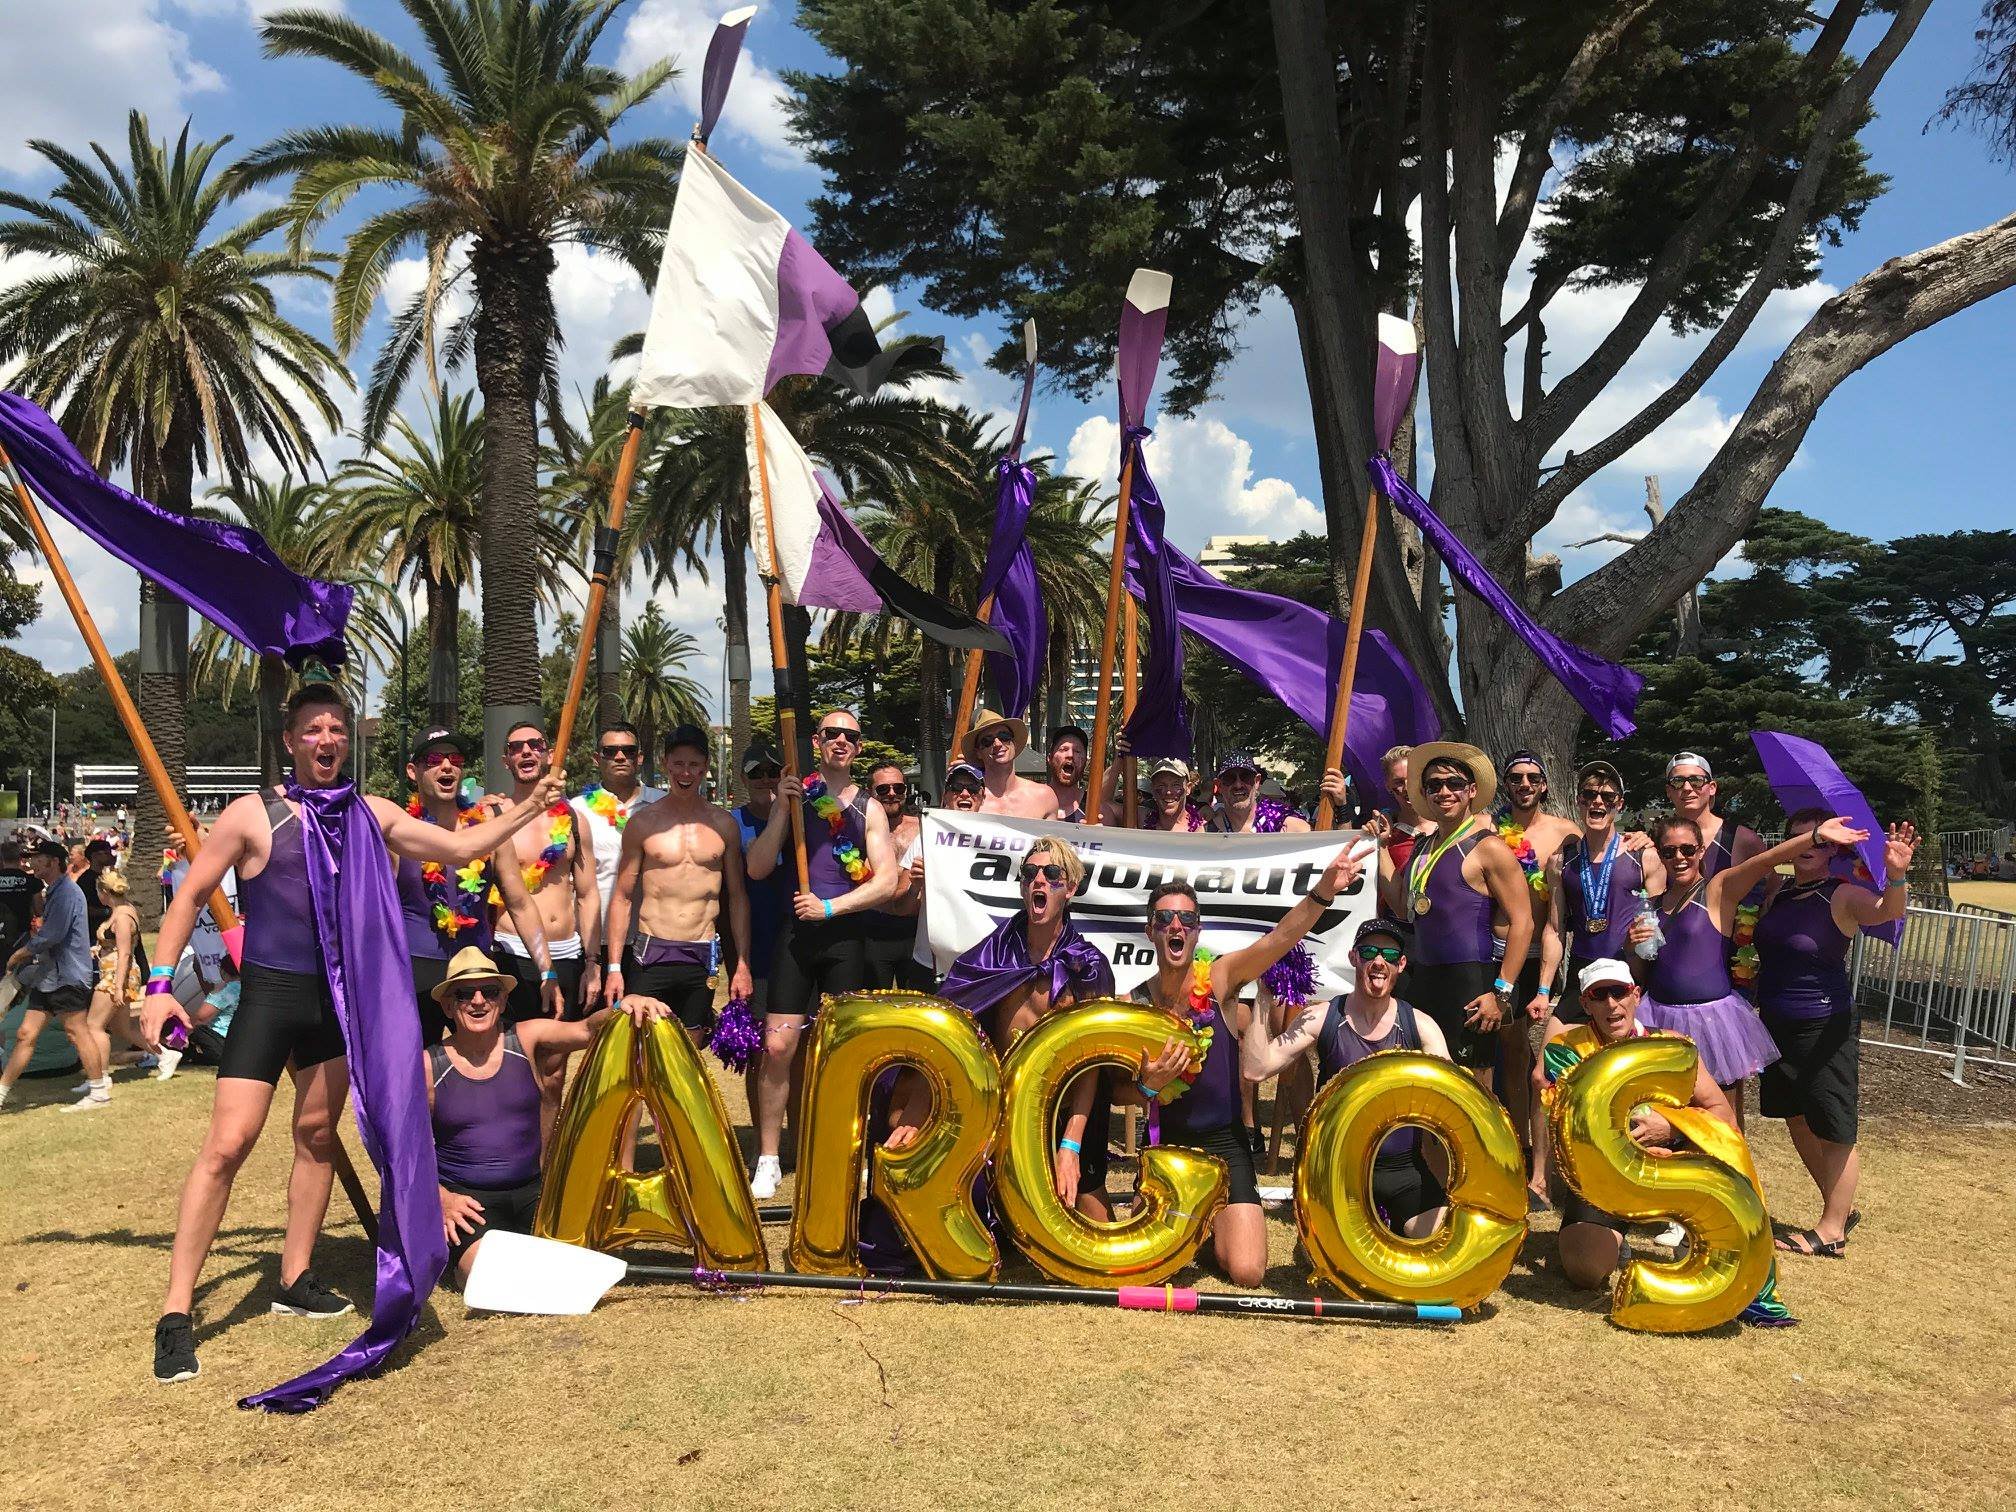  The Melbourne Argonauts celebrate Pride. 